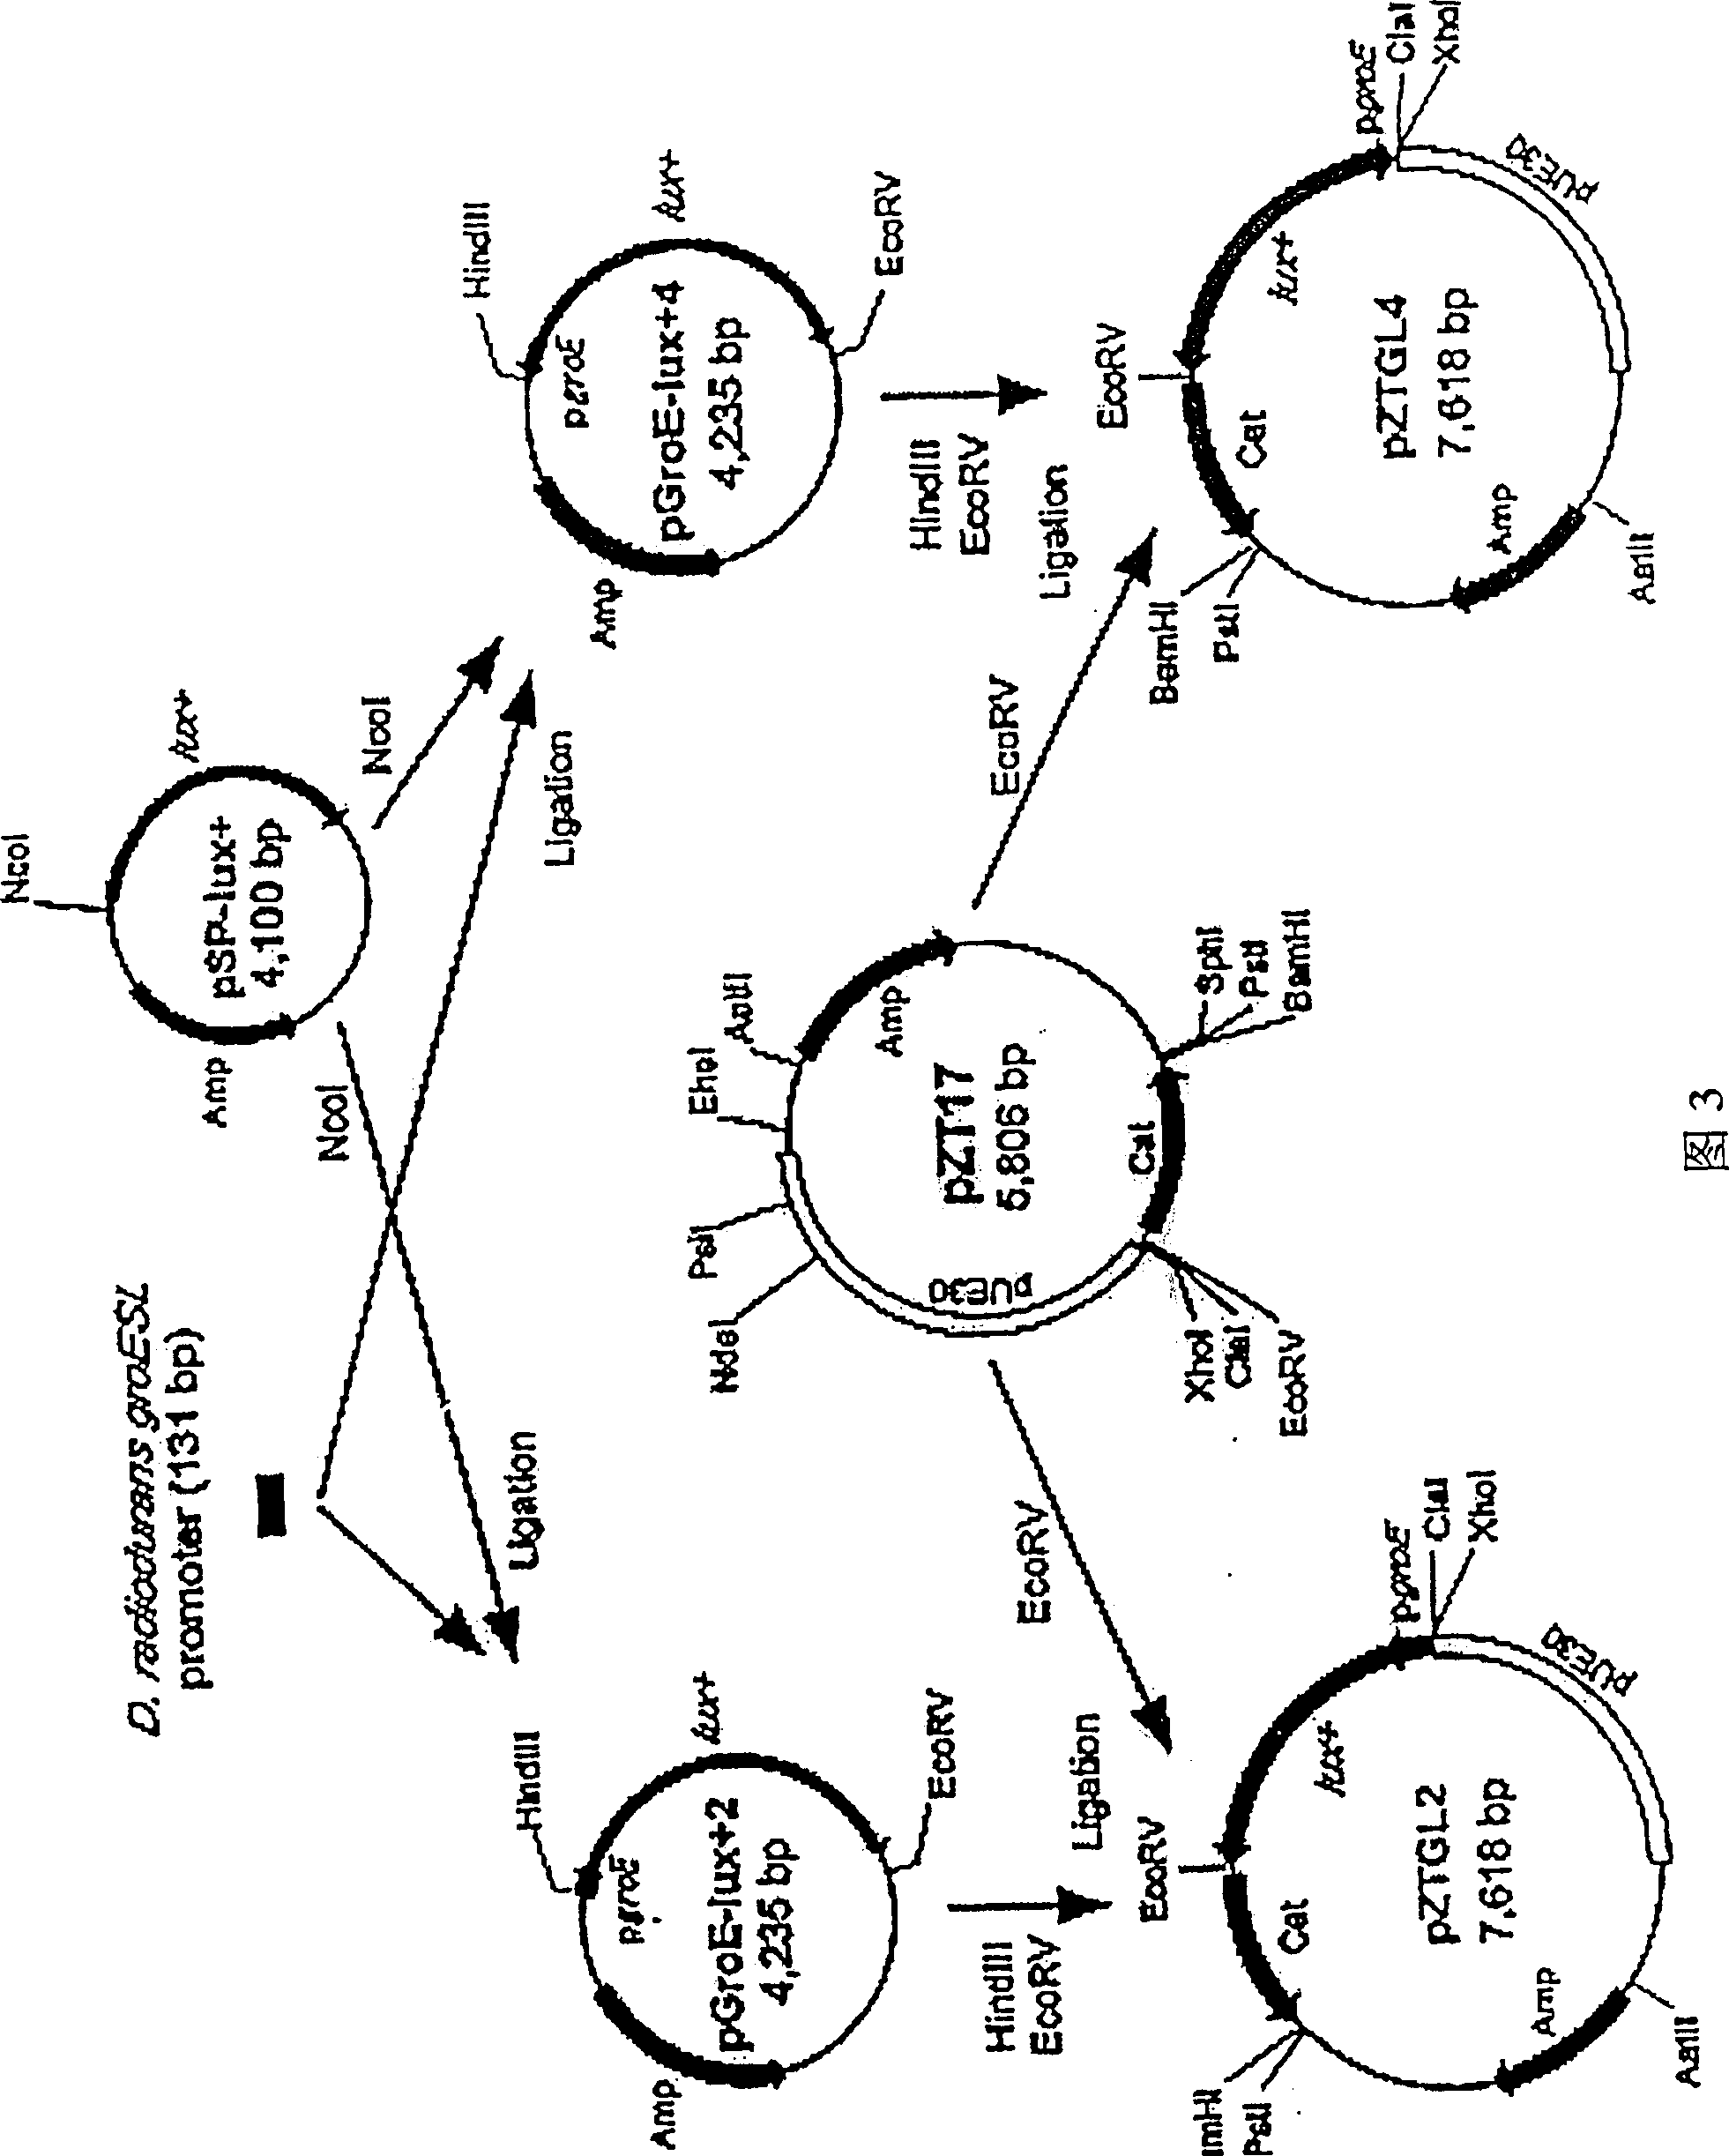 Method for preparing radio-resistant bacterium having luciferase activity